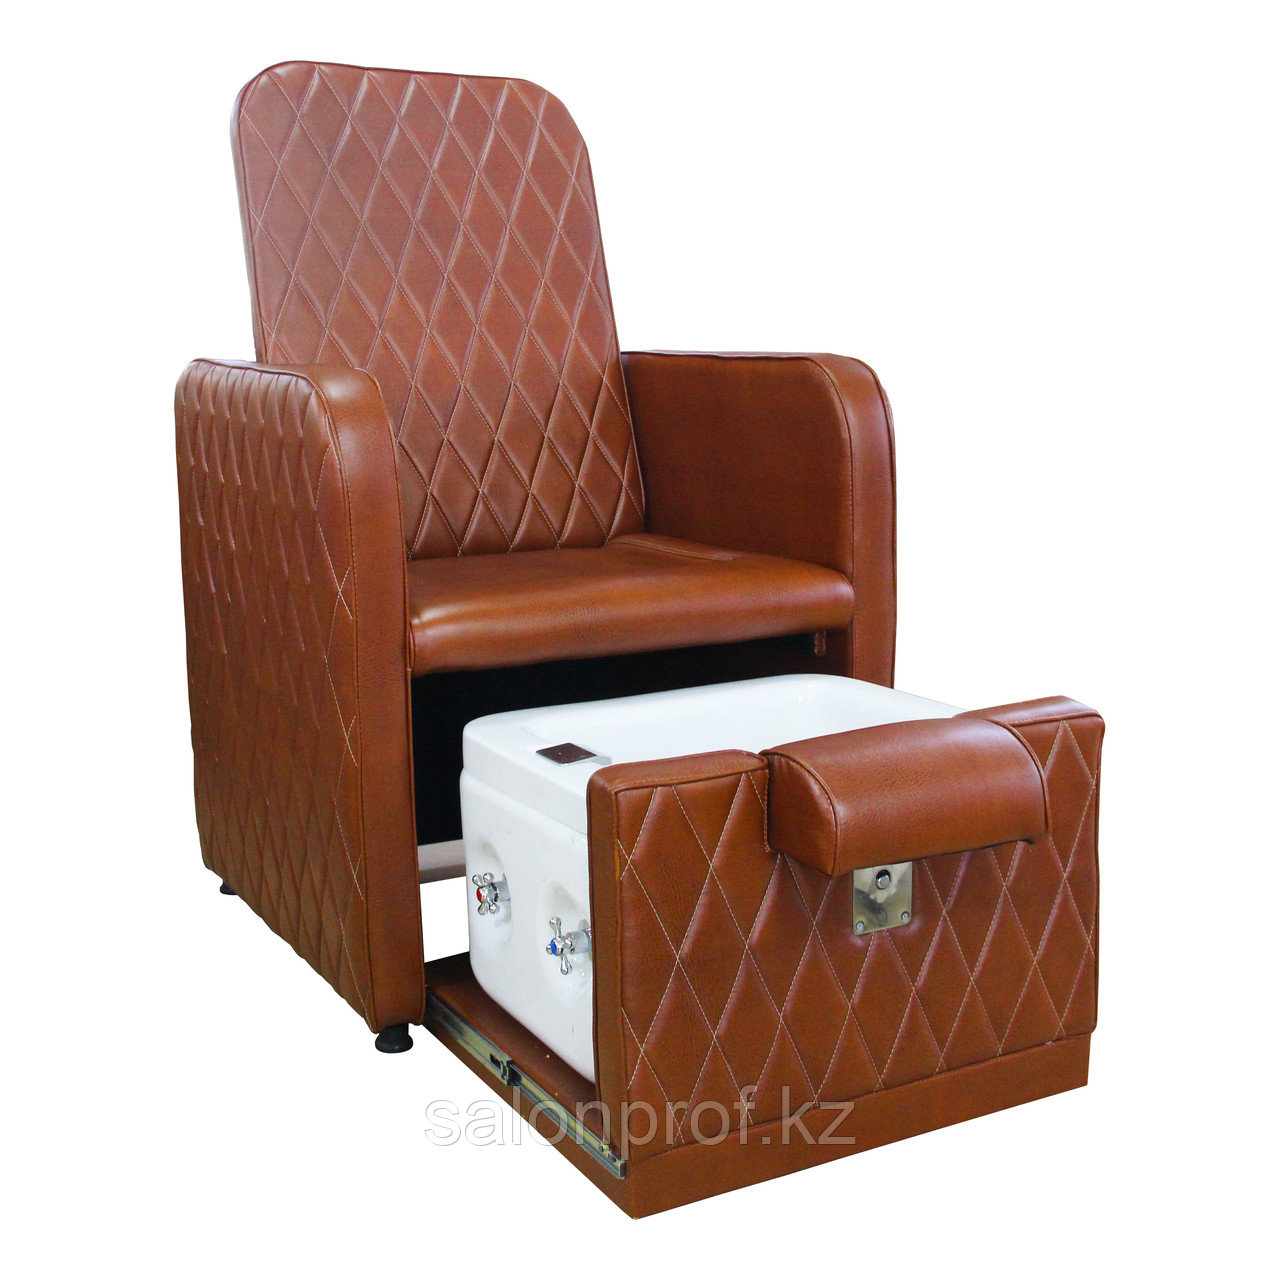 AS-0889 Кресло педикюрное с ванночкой (светло-коричневое)